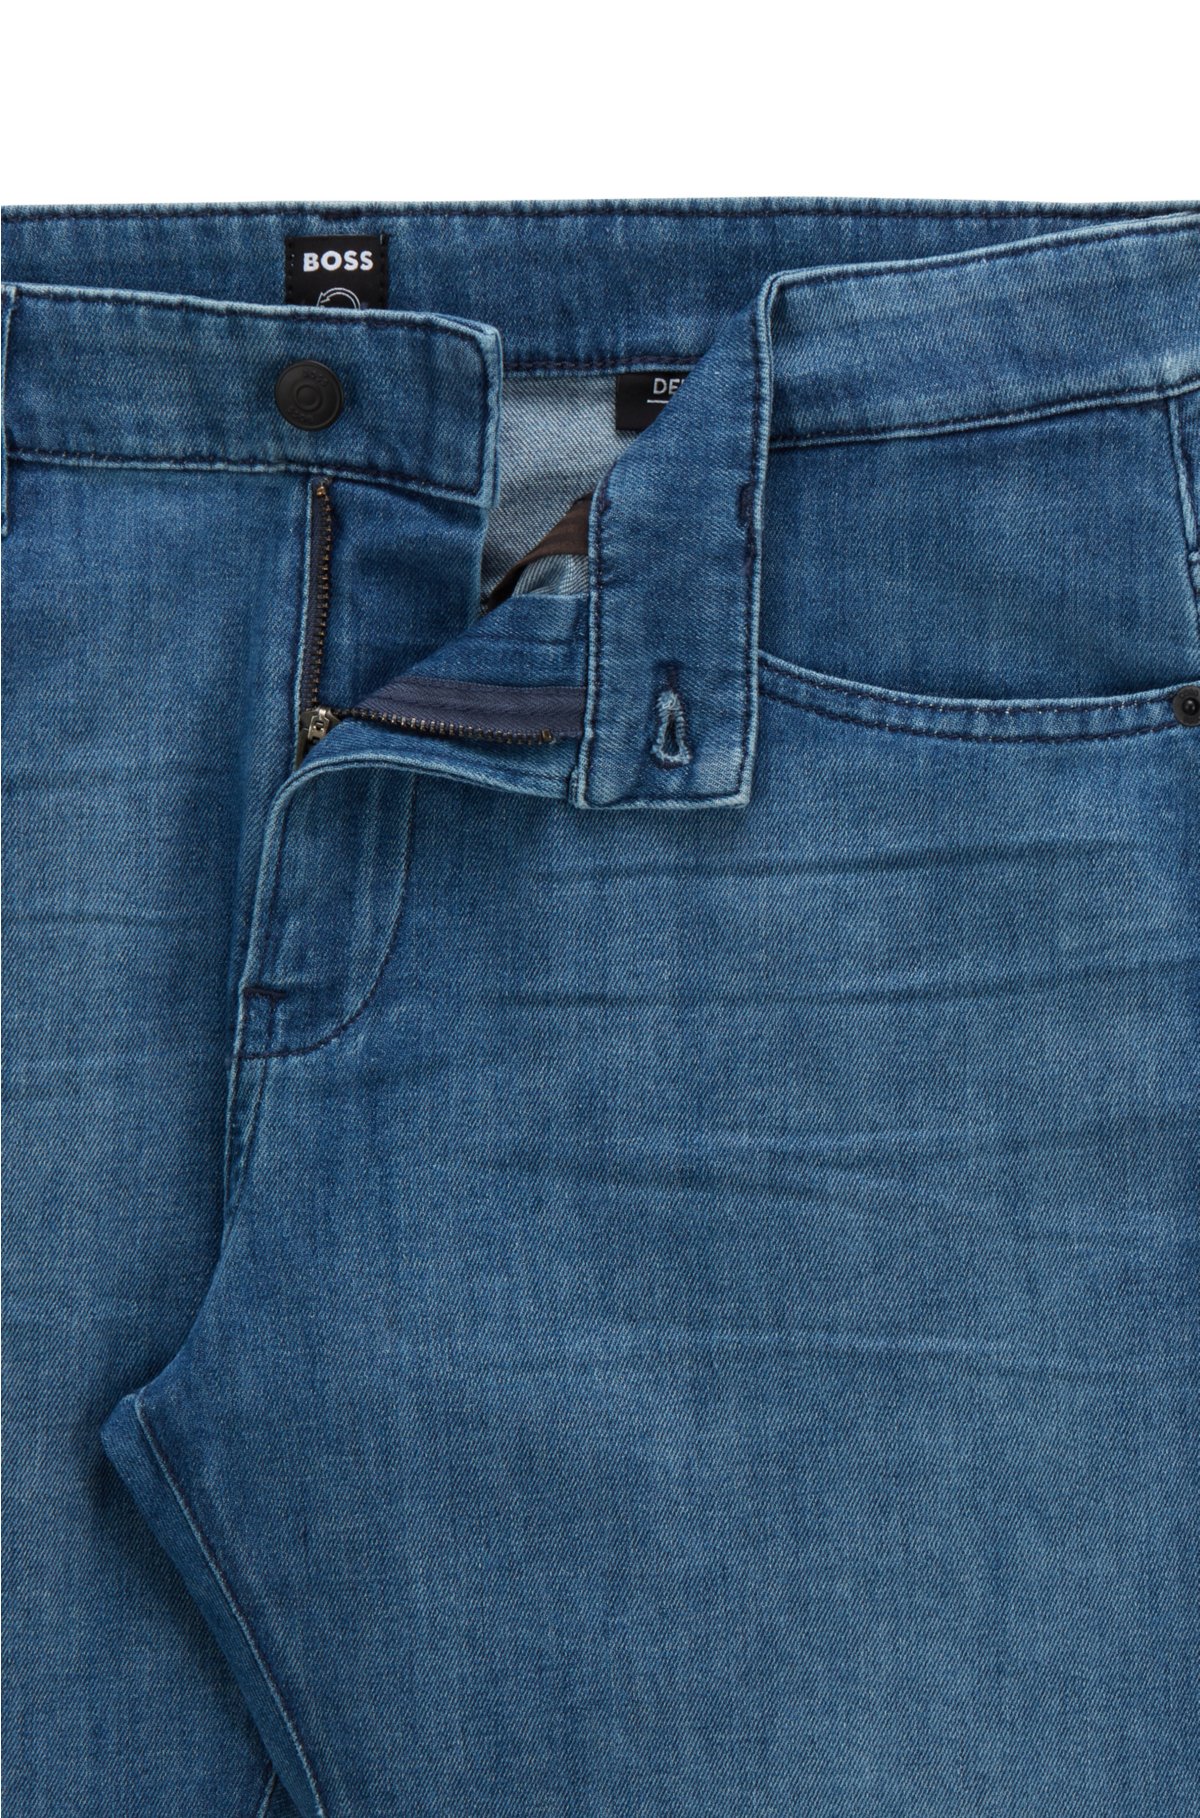 BOSS - Slim-fit jeans in blue Italian lightweight denim